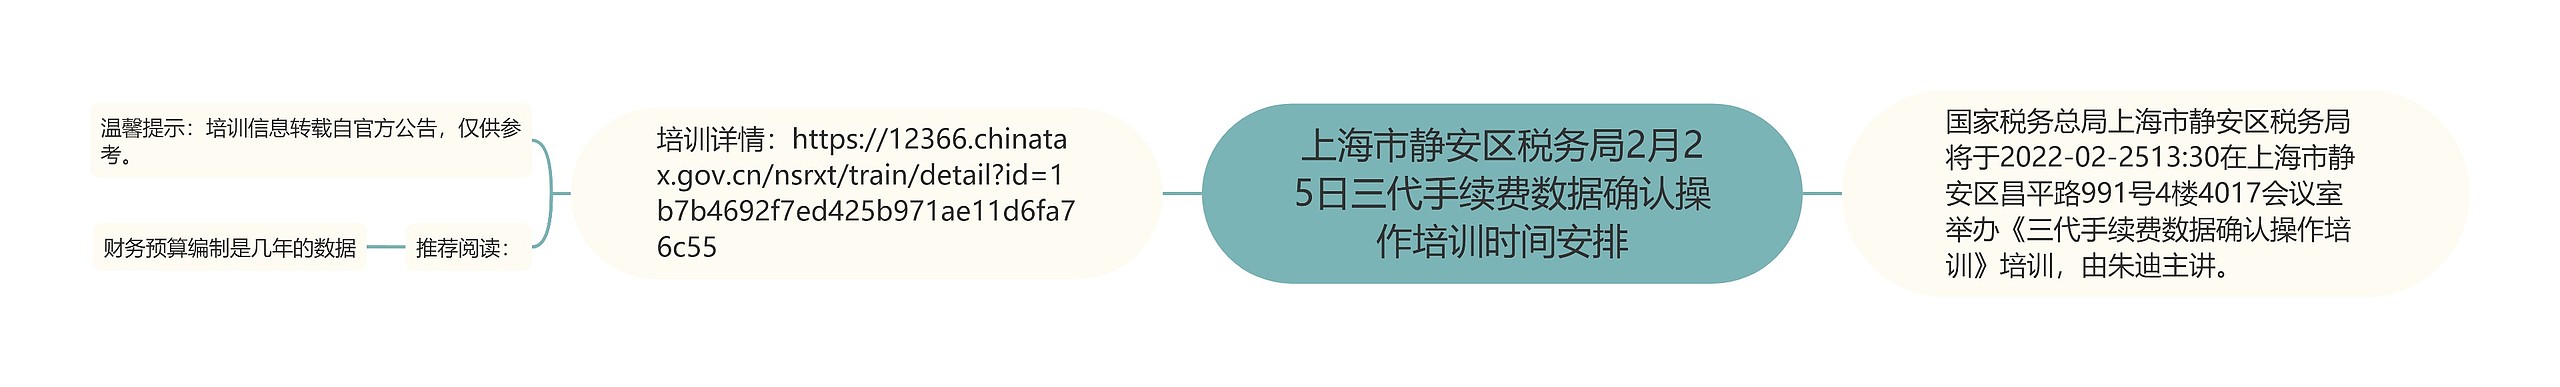 上海市静安区税务局2月25日三代手续费数据确认操作培训时间安排思维导图